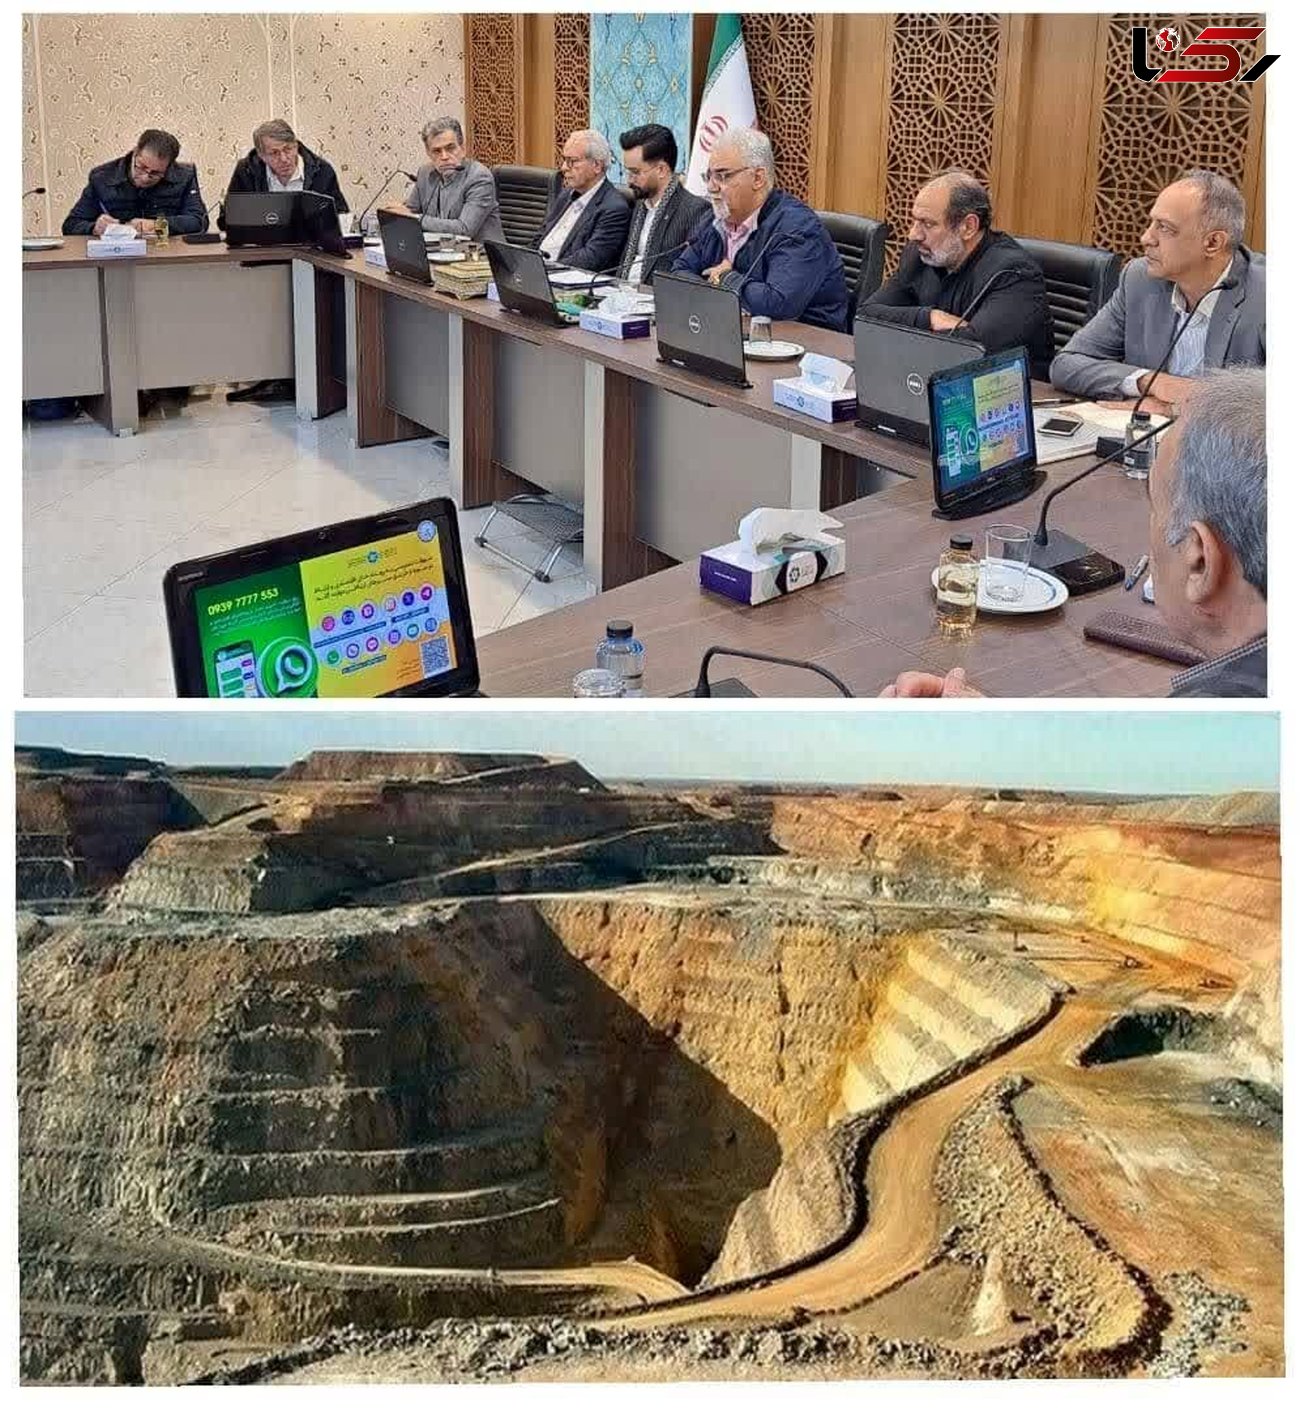 معدن؛ دومین ثروت خفته کشور/ ایران تا 200 سال آینده ذخیره سنگ دارد/ لزوم توجه به ظرفیت شهرهای خواهرخوانده + فیلم